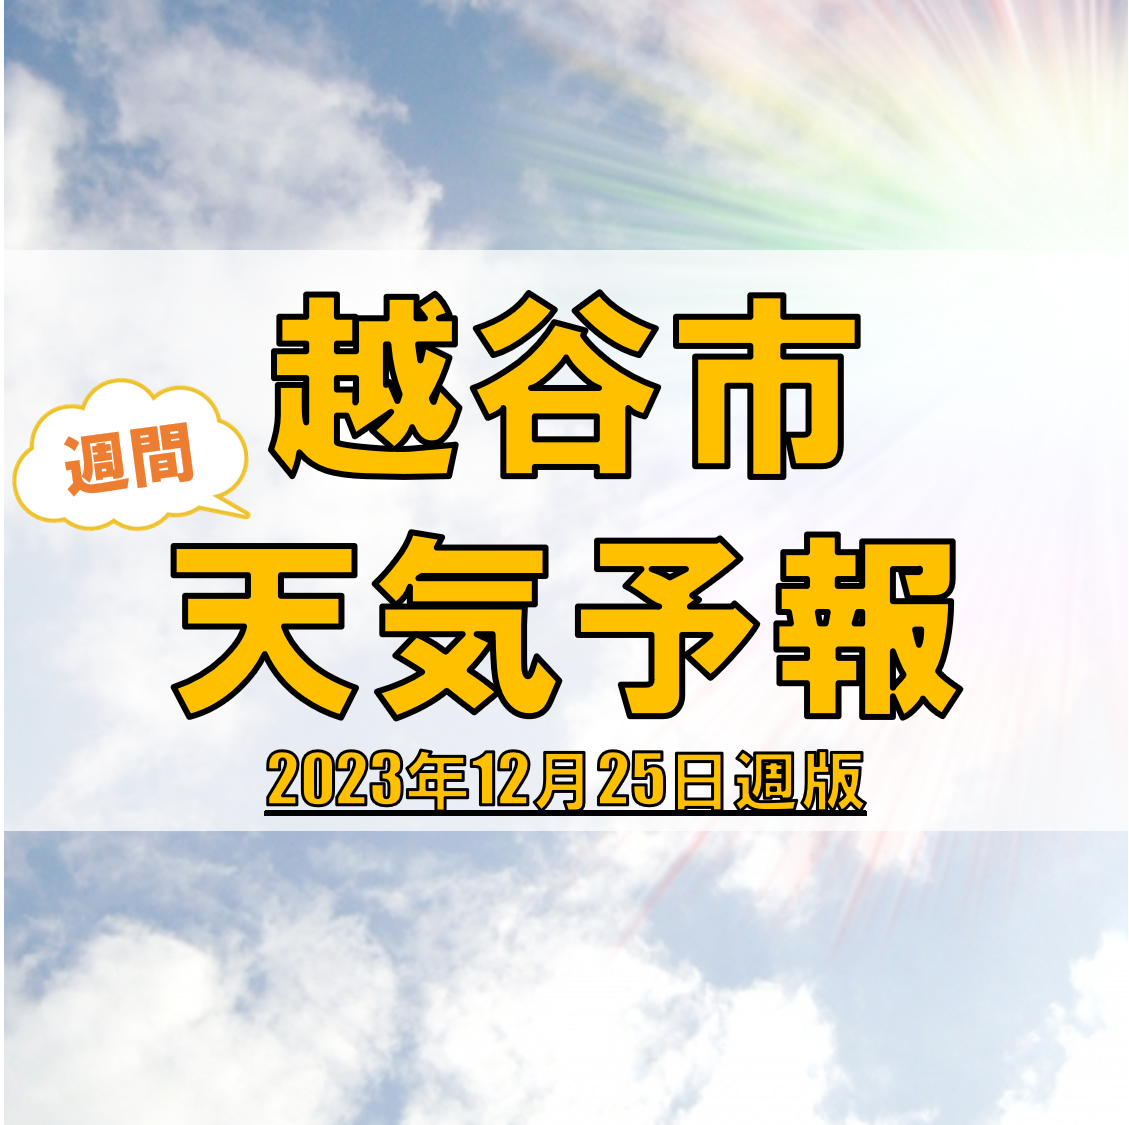 越谷市の天気 週間予報【2023年12月25日週】